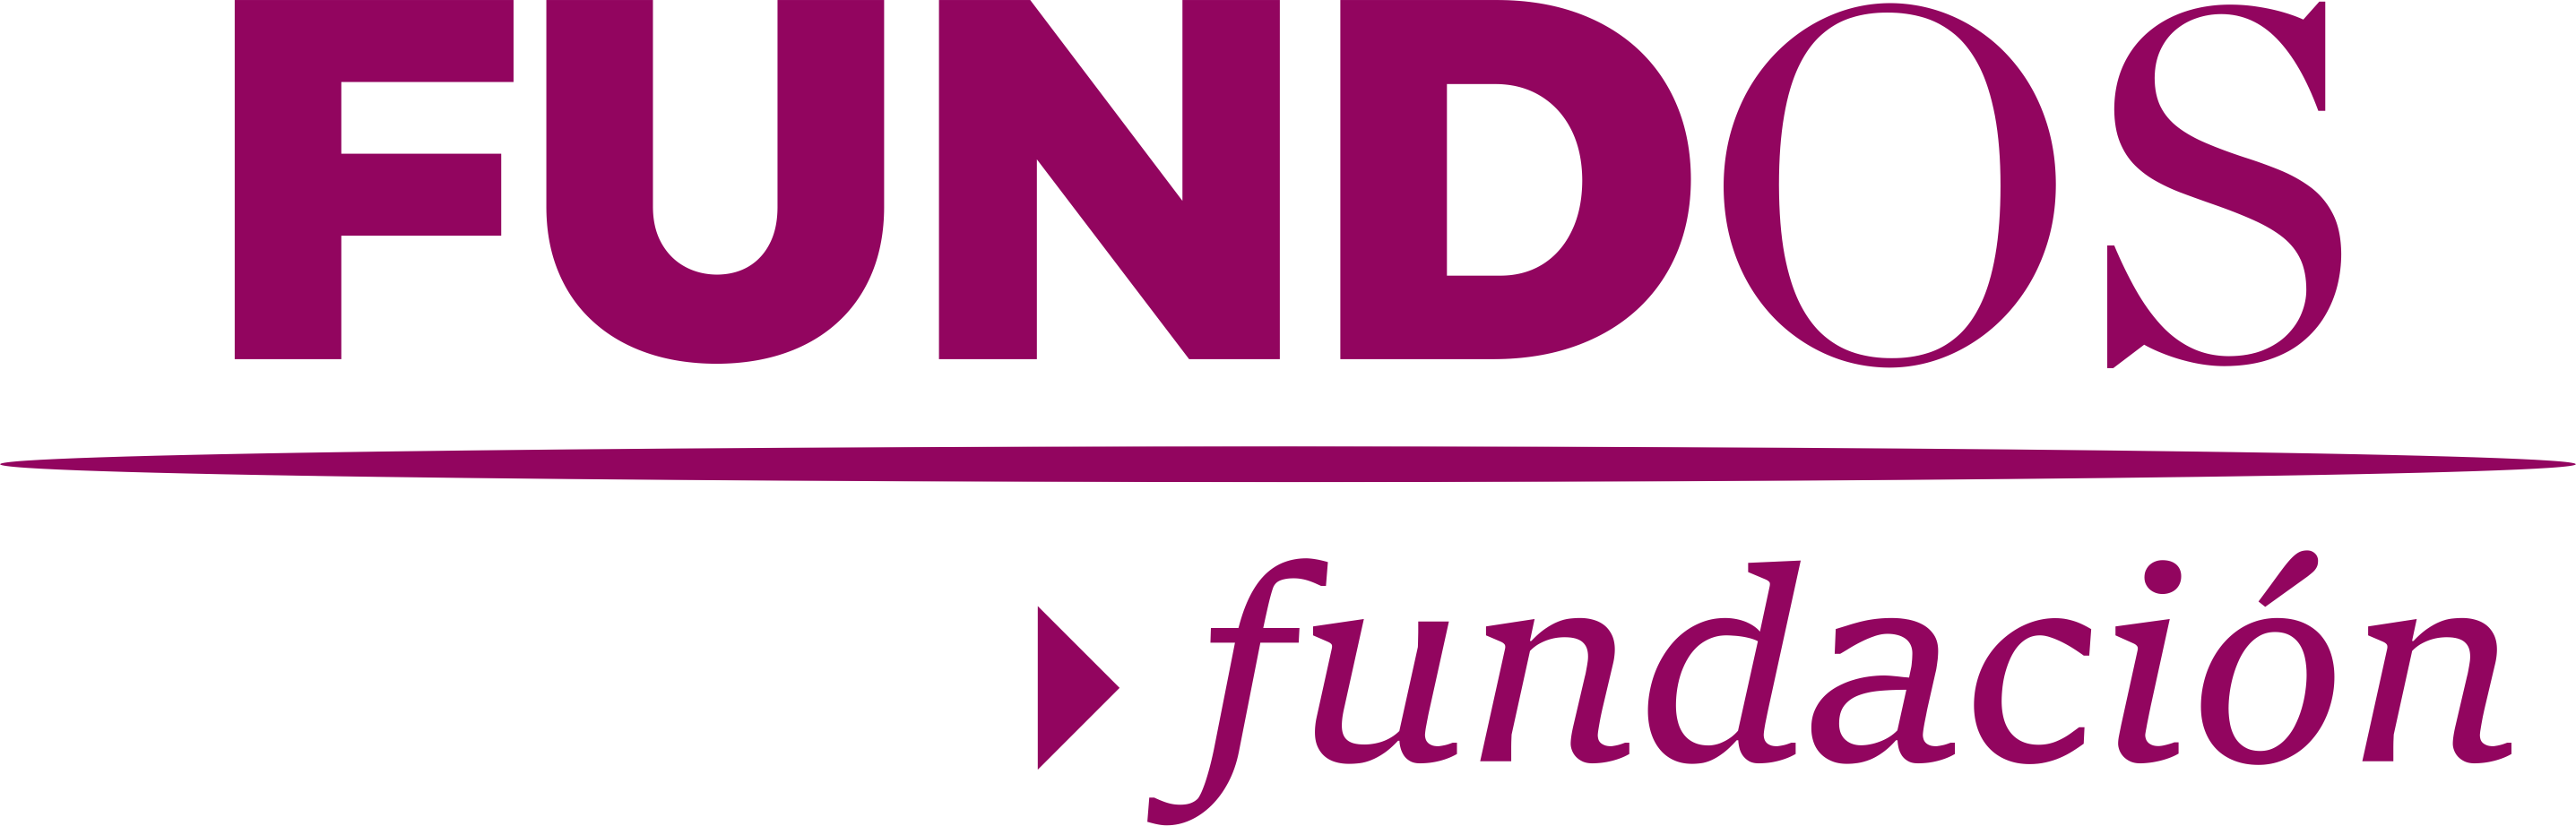 Fundación Fundos member of the CECA group